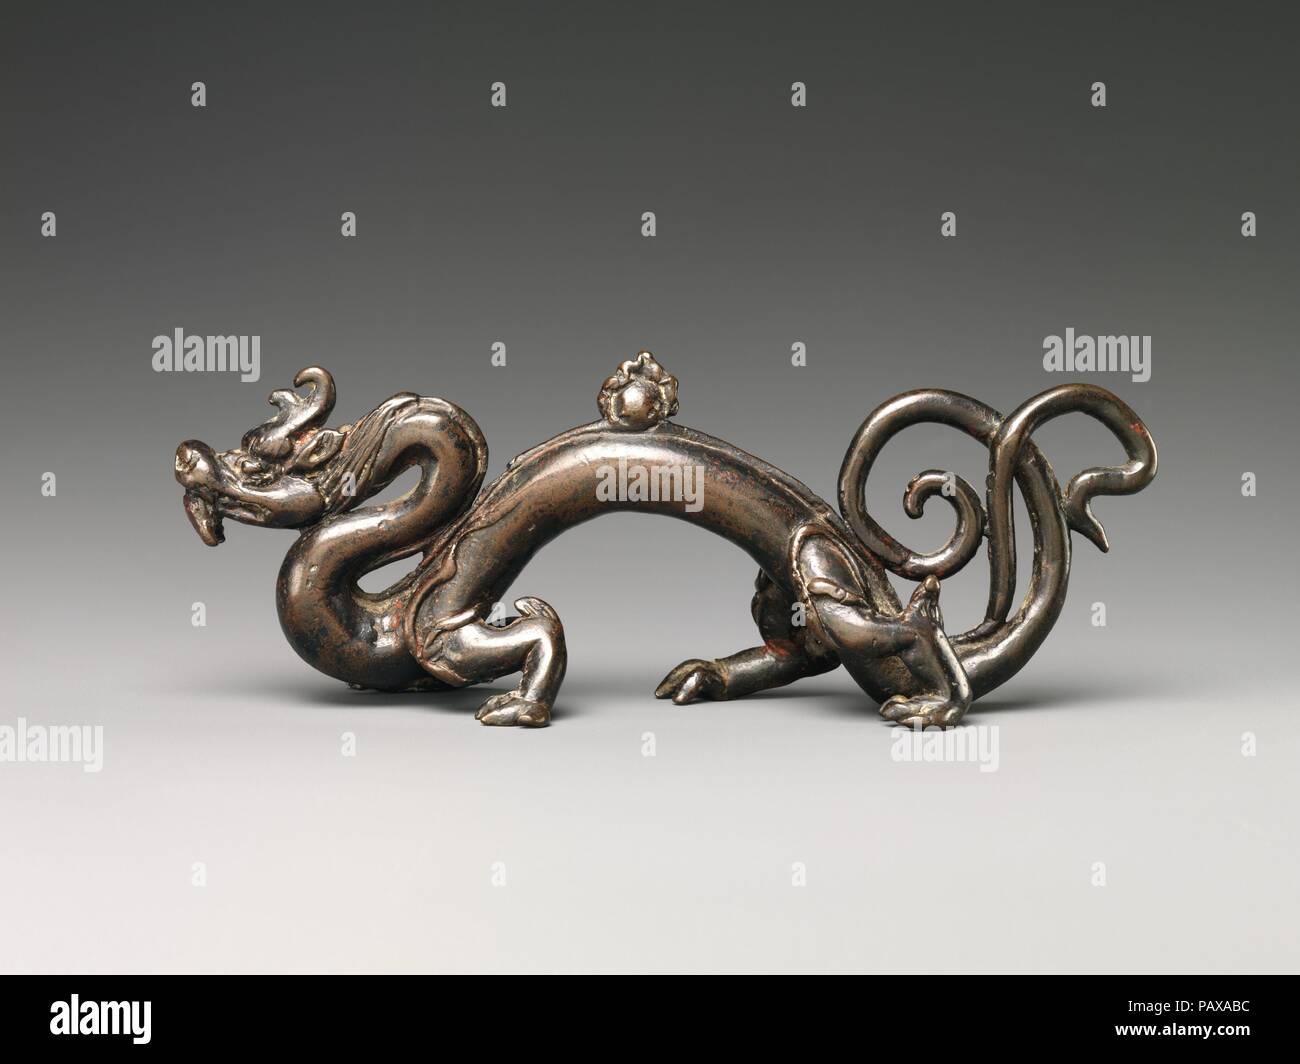 Resto de pincel en la forma de un dragón. Cultura: China. Dimensiones: H. 2 1/8 in. (5,4 cm); W. 6 7/8 in. (17,5 cm); D. 1 1/2 pulg. (3,8 cm). Fecha: Siglo XV. Un raro ejemplo de Ming del siglo XV, obra de bronce, este pincel resto fue moldeada en la forma de un dragón sinuosas en cuclillas sobre sus cuatro patas potentes con una 'flaming pearl' en su espalda arqueada. Se distingue además por dos cuernos curvos y una cola bifurcada que las bobinas y despliega. Su cuello, cuerpo y cola todos ofrecen lugares para descansar escrito pinceles. Más que un objeto funcional, este pincel resto es un imaginativo y auspiciosa escultura des Foto de stock